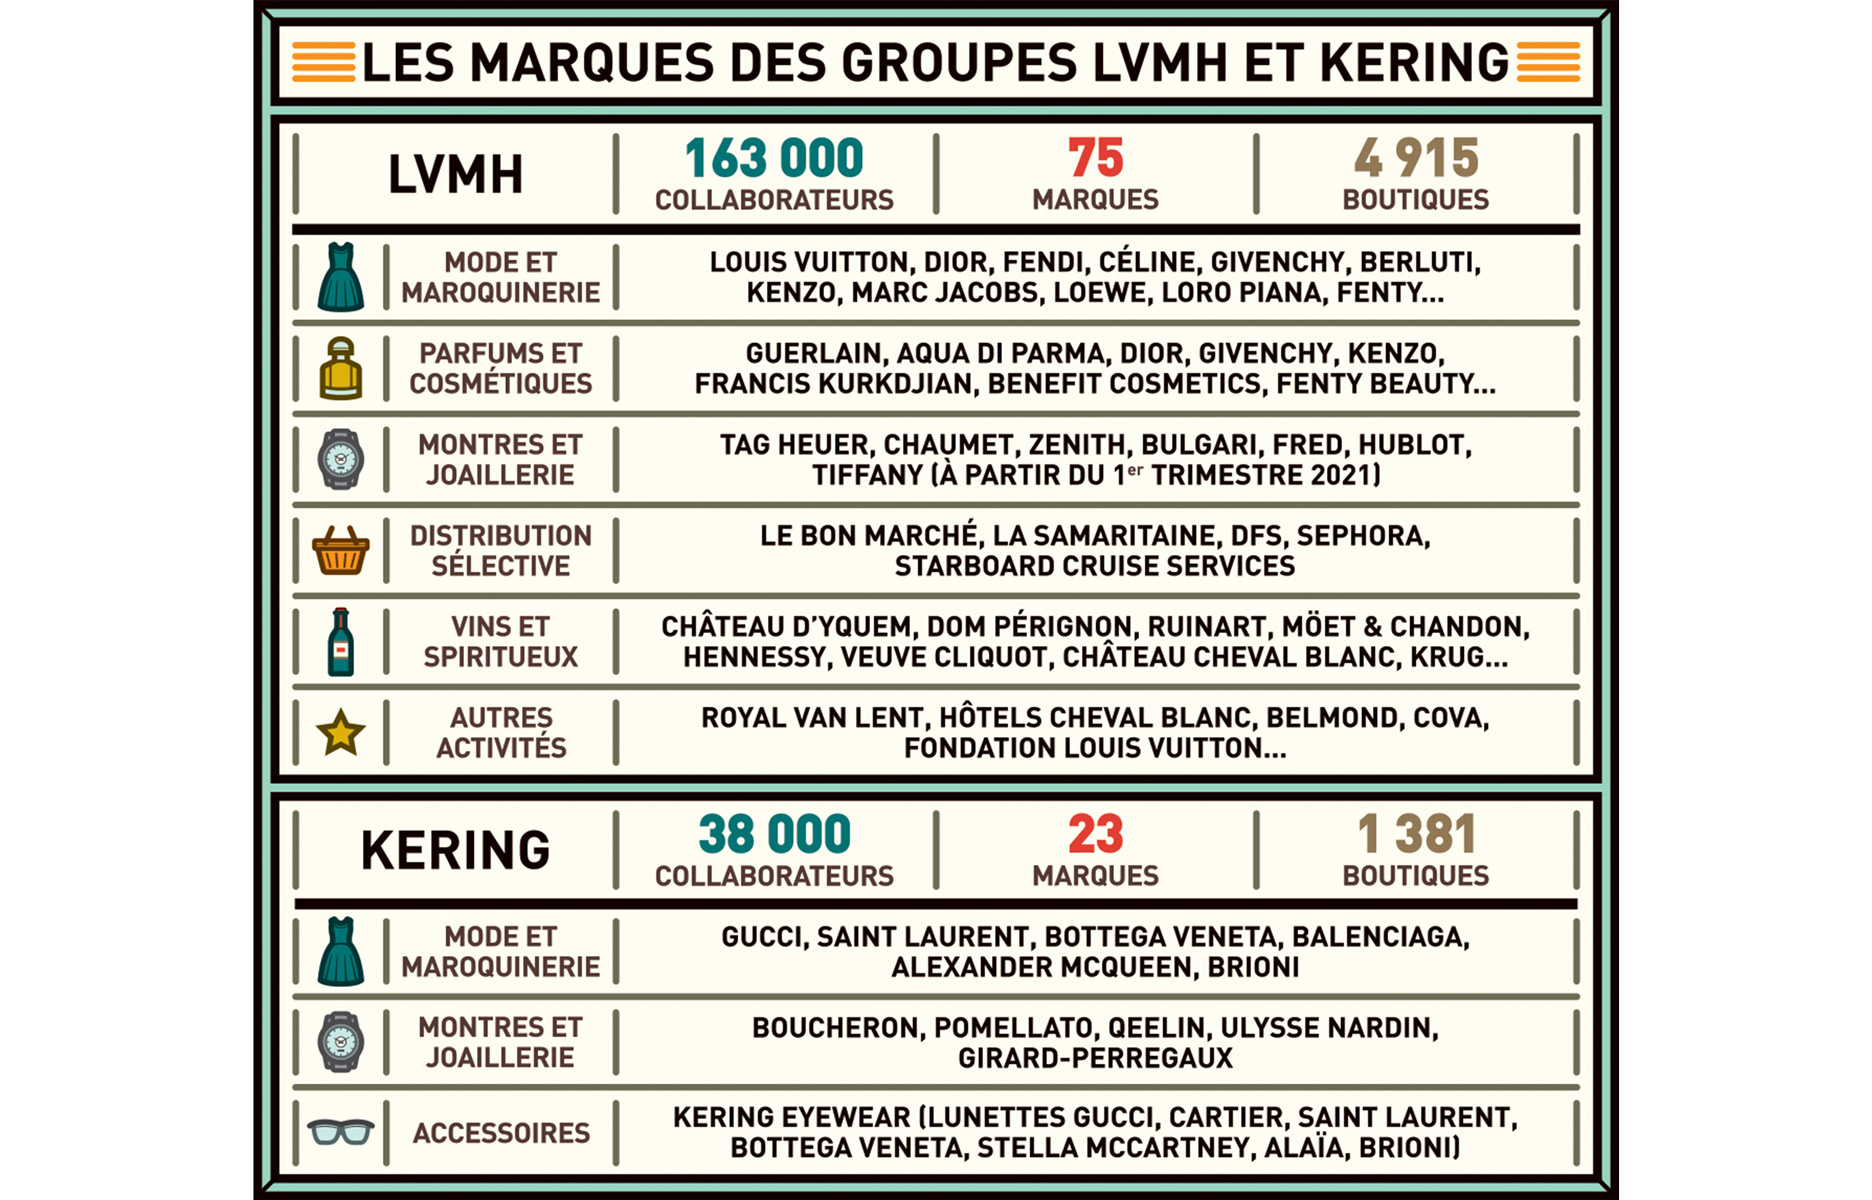 LVMH et Kering, les deux géants français du luxe - The Good Life